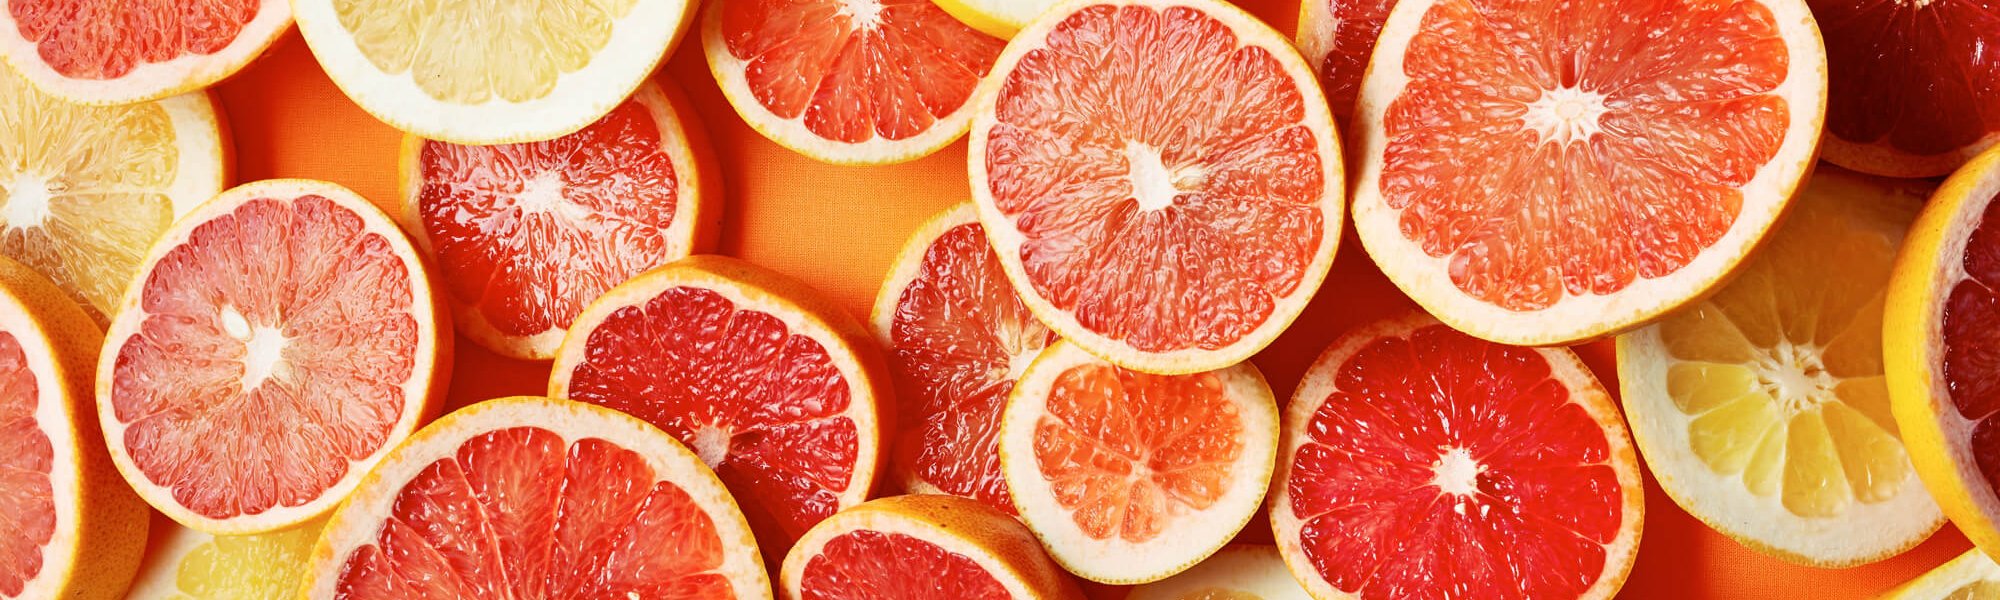 Lợi ích của Vitamin C đối với làn da: bổ sung rau quả để da sáng đẹp Bài viết